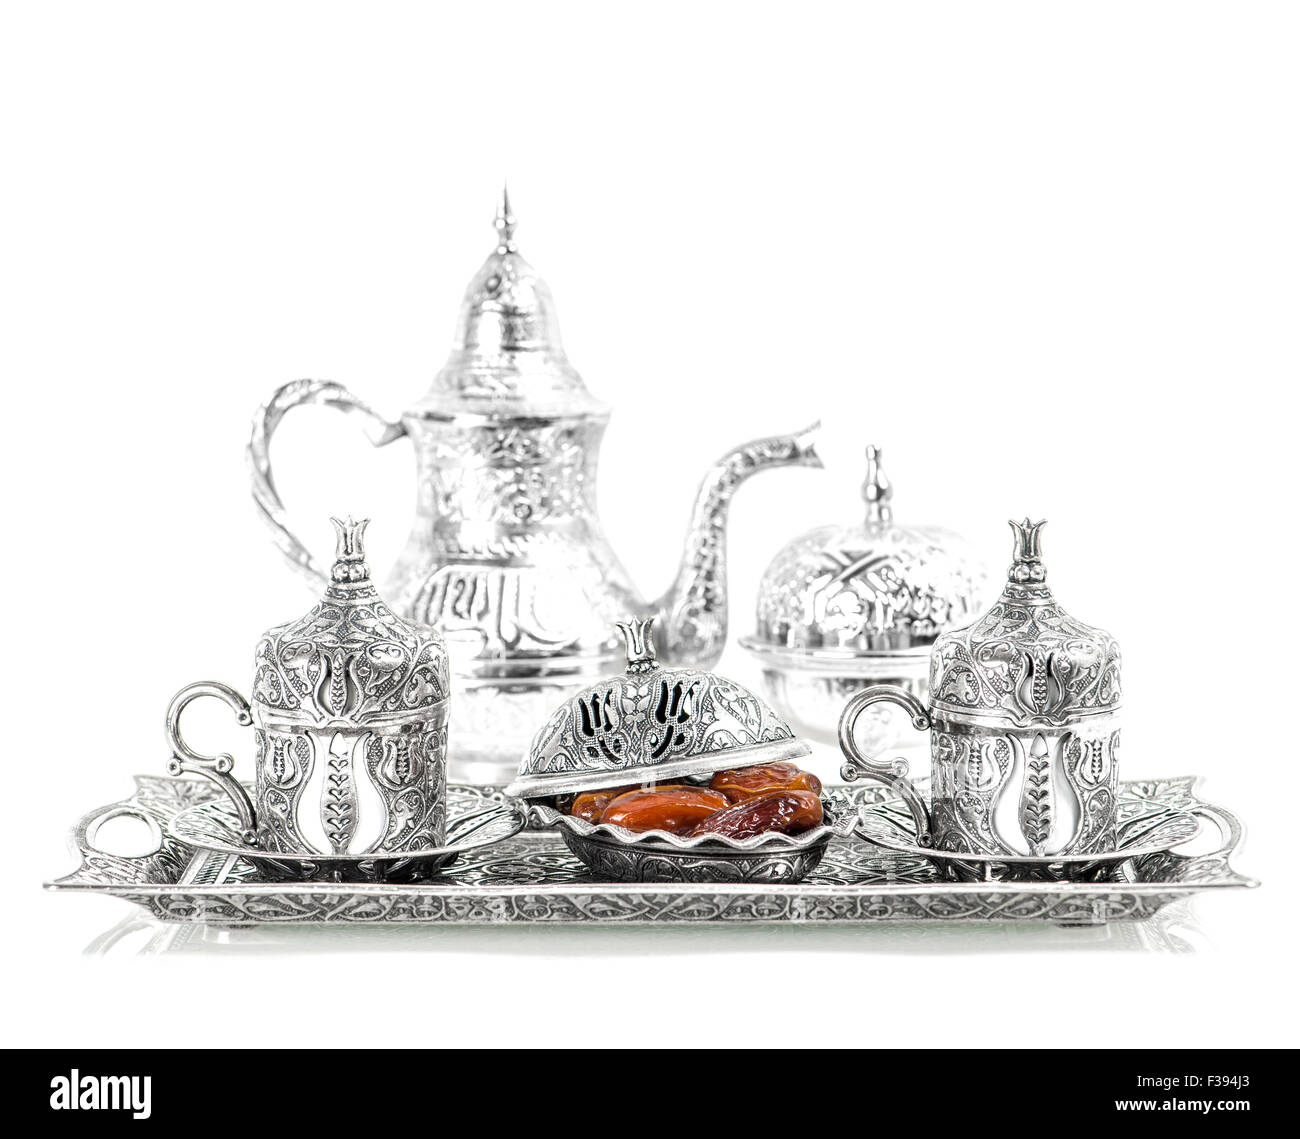 Tischdekoration mit Silbergeschirr und Termine. Orientalische Gastfreundschaft Konzept mit Tee oder Kaffee Tassen. Hohe Schlüssel Bild Stockfoto